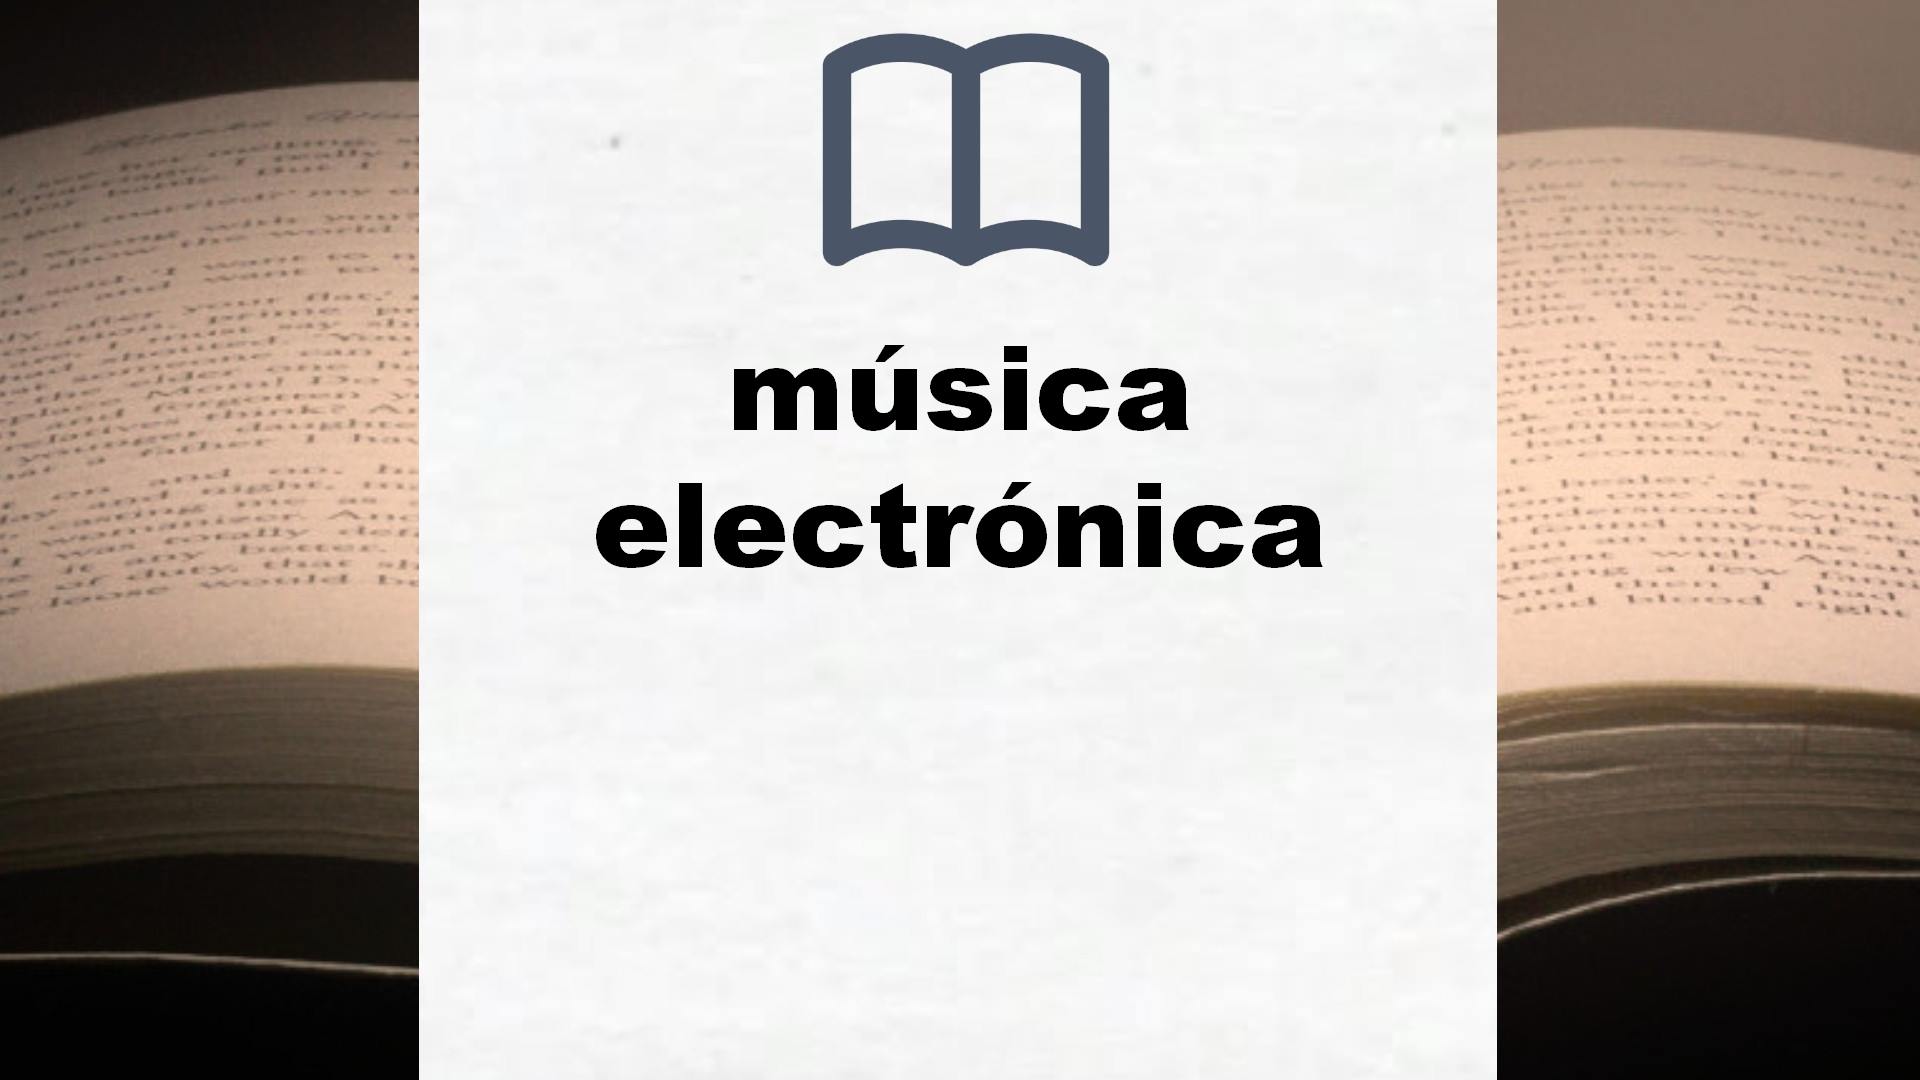 Libros sobre música electrónica